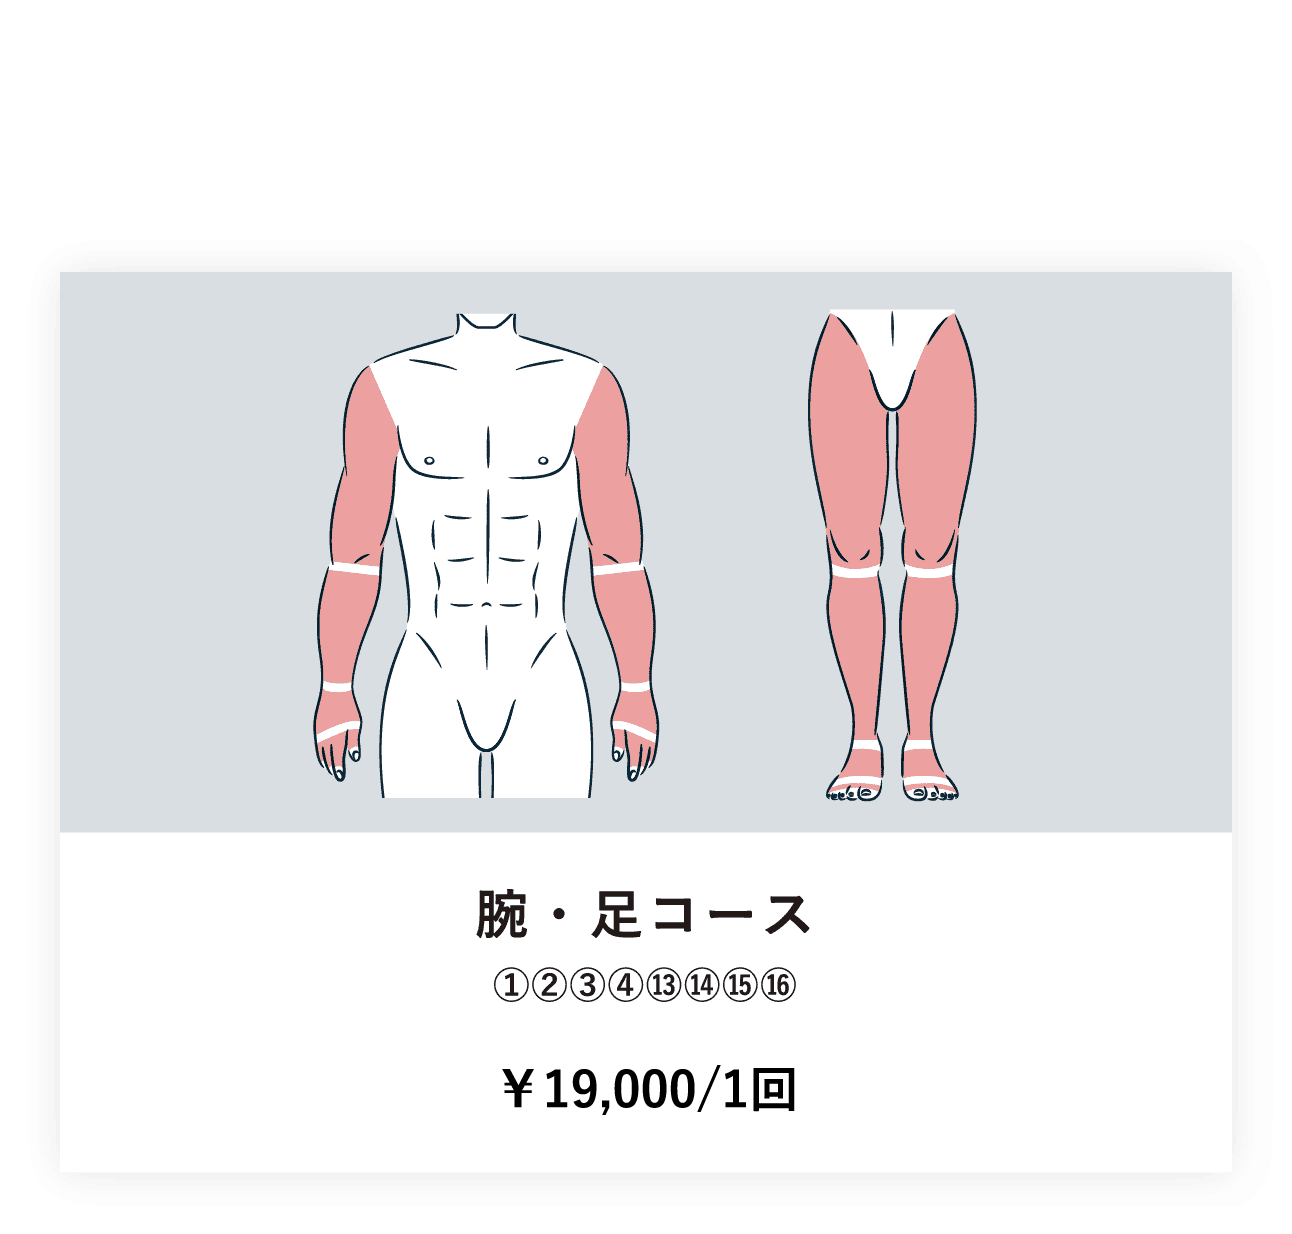 腕・足コース ①②③④⑬⑭⑮⑯ ¥244,000/10回　¥158,600/5回　¥39,040/1回